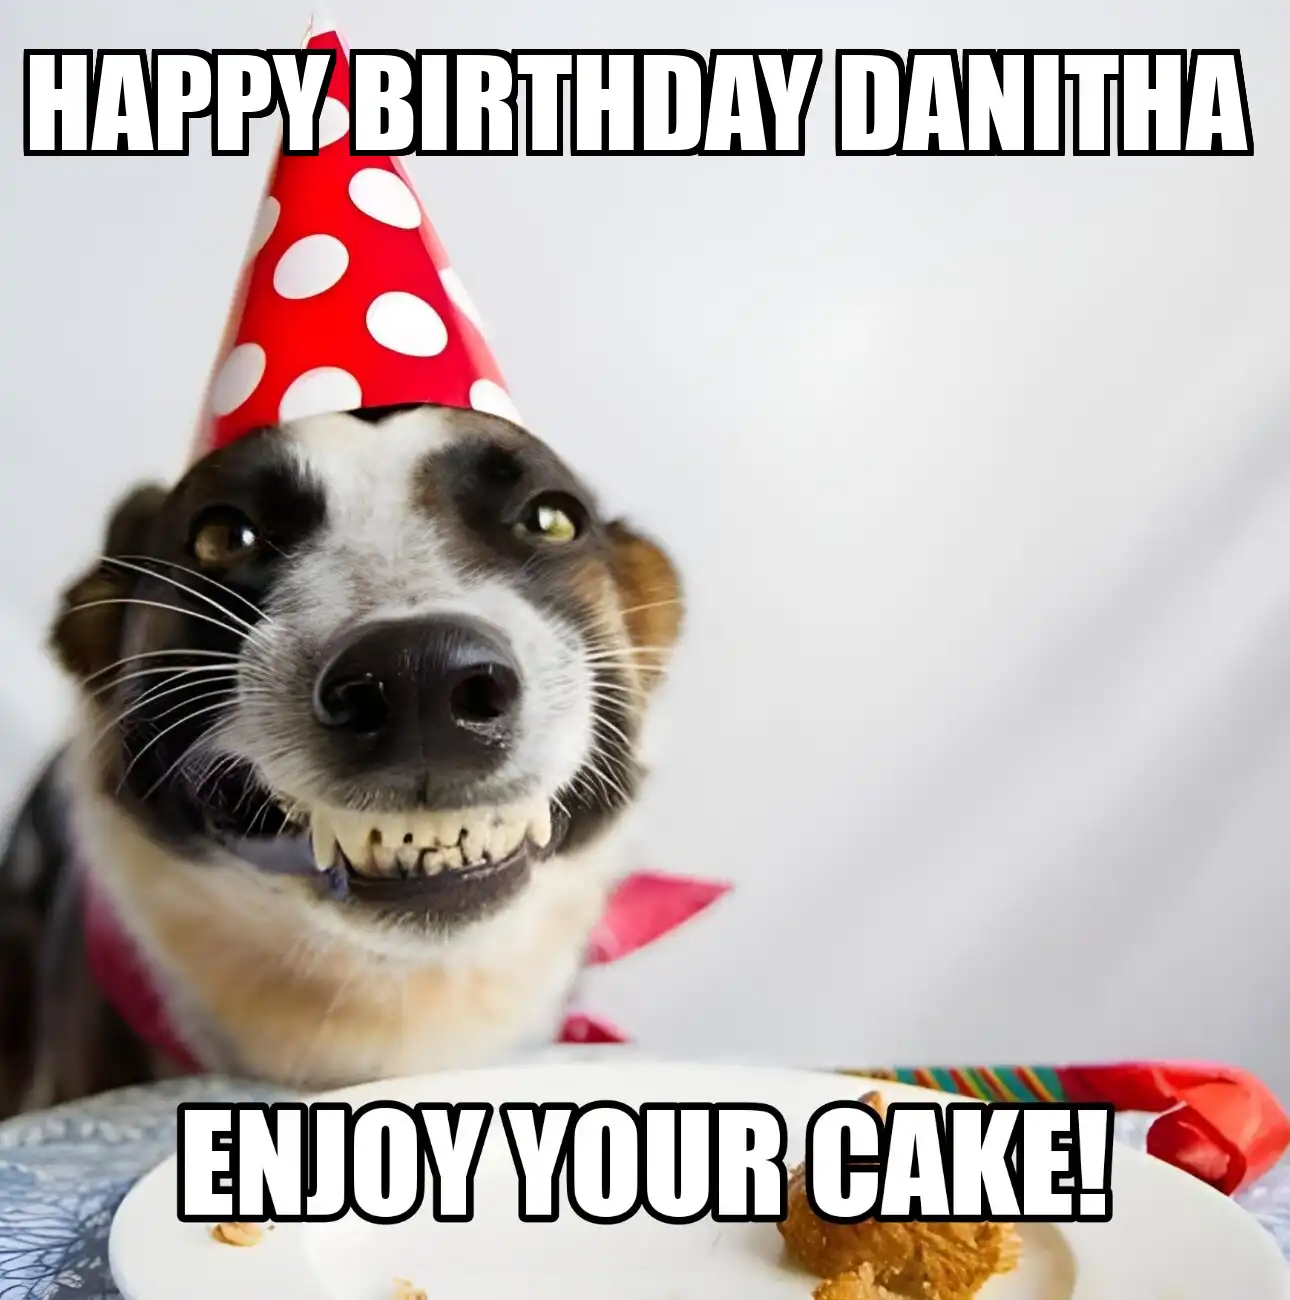 Happy Birthday Danitha Enjoy Your Cake Dog Meme